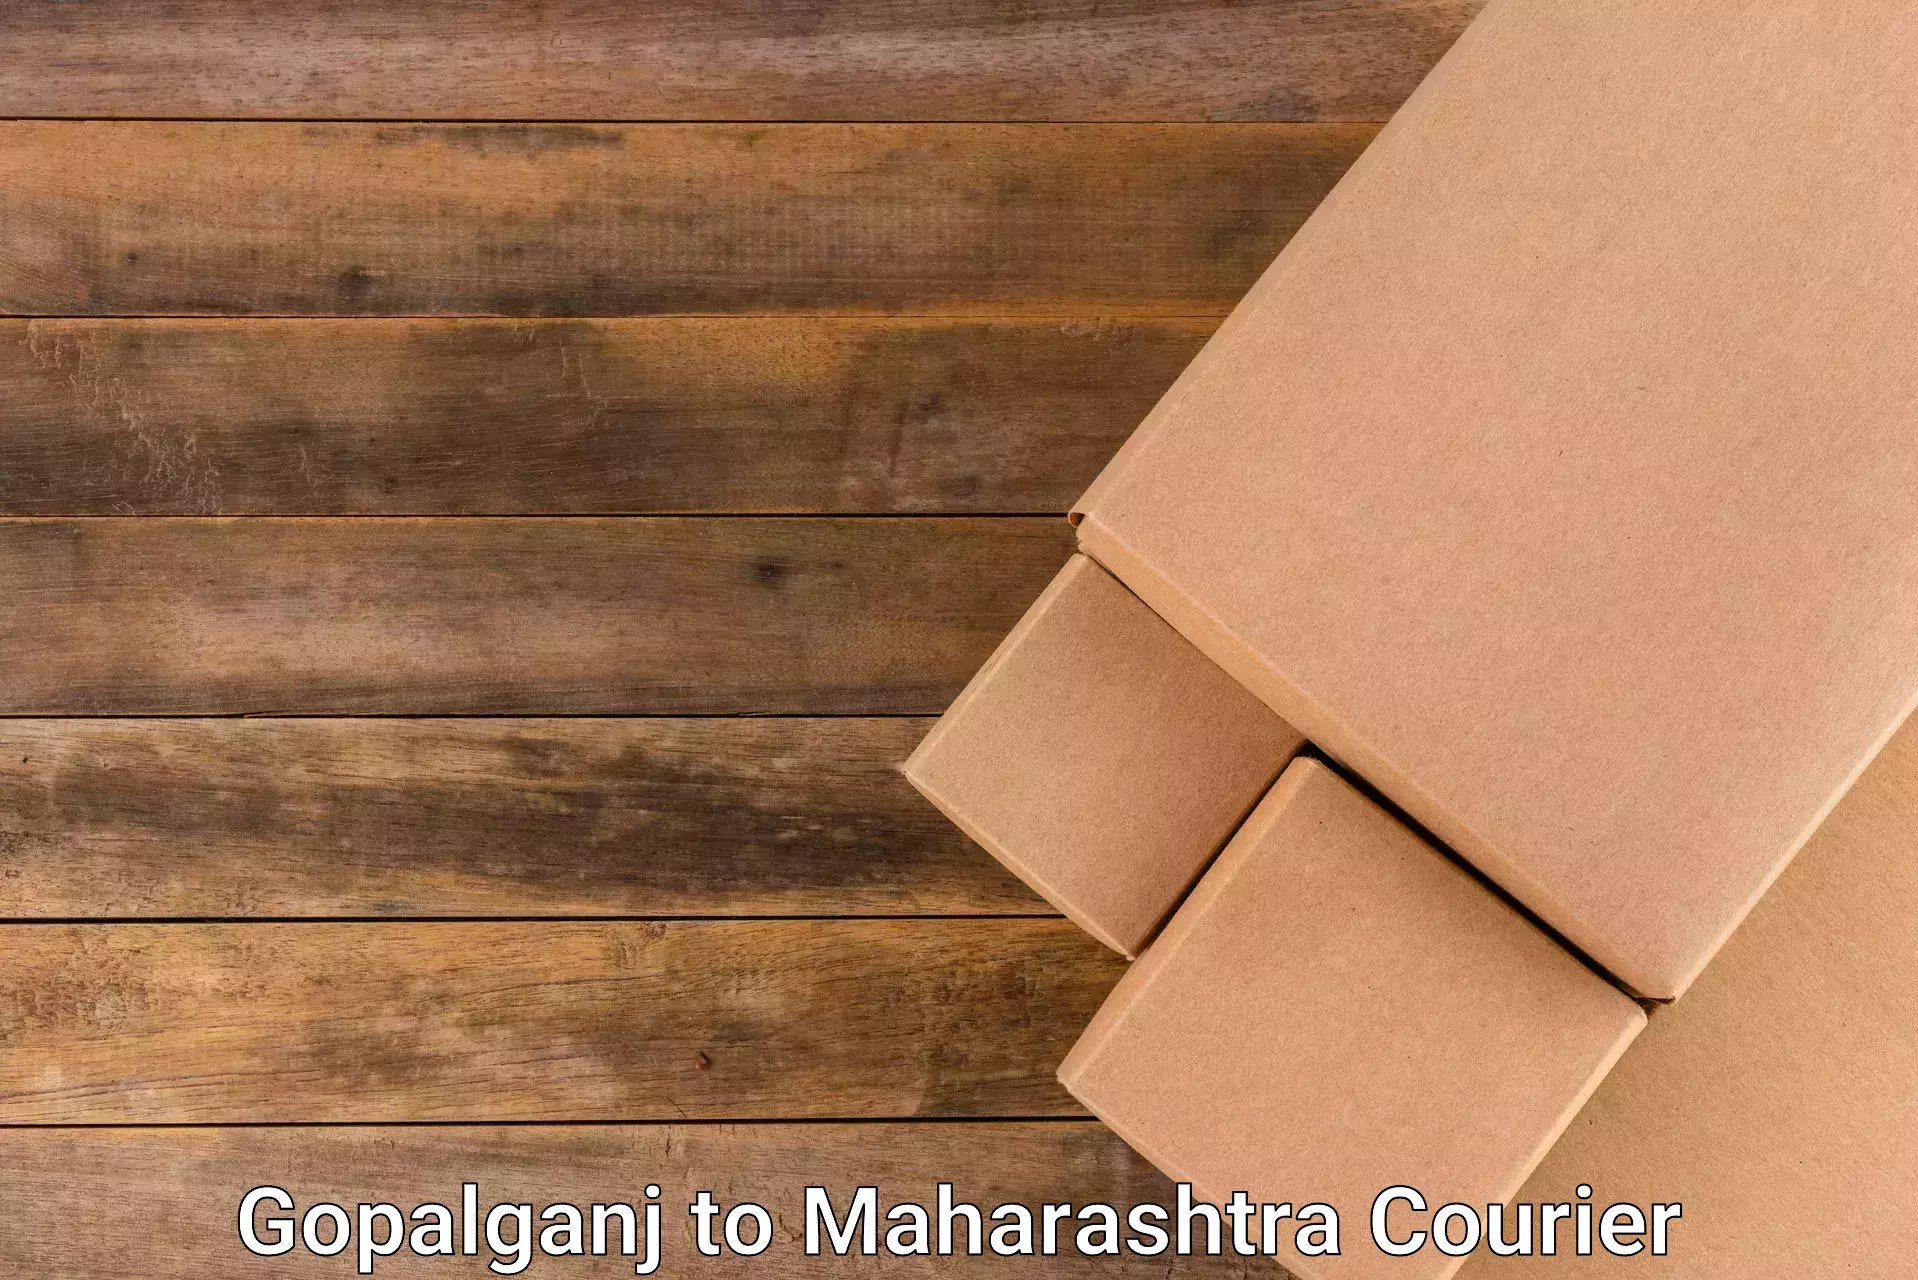 Sustainable courier practices Gopalganj to Maharashtra